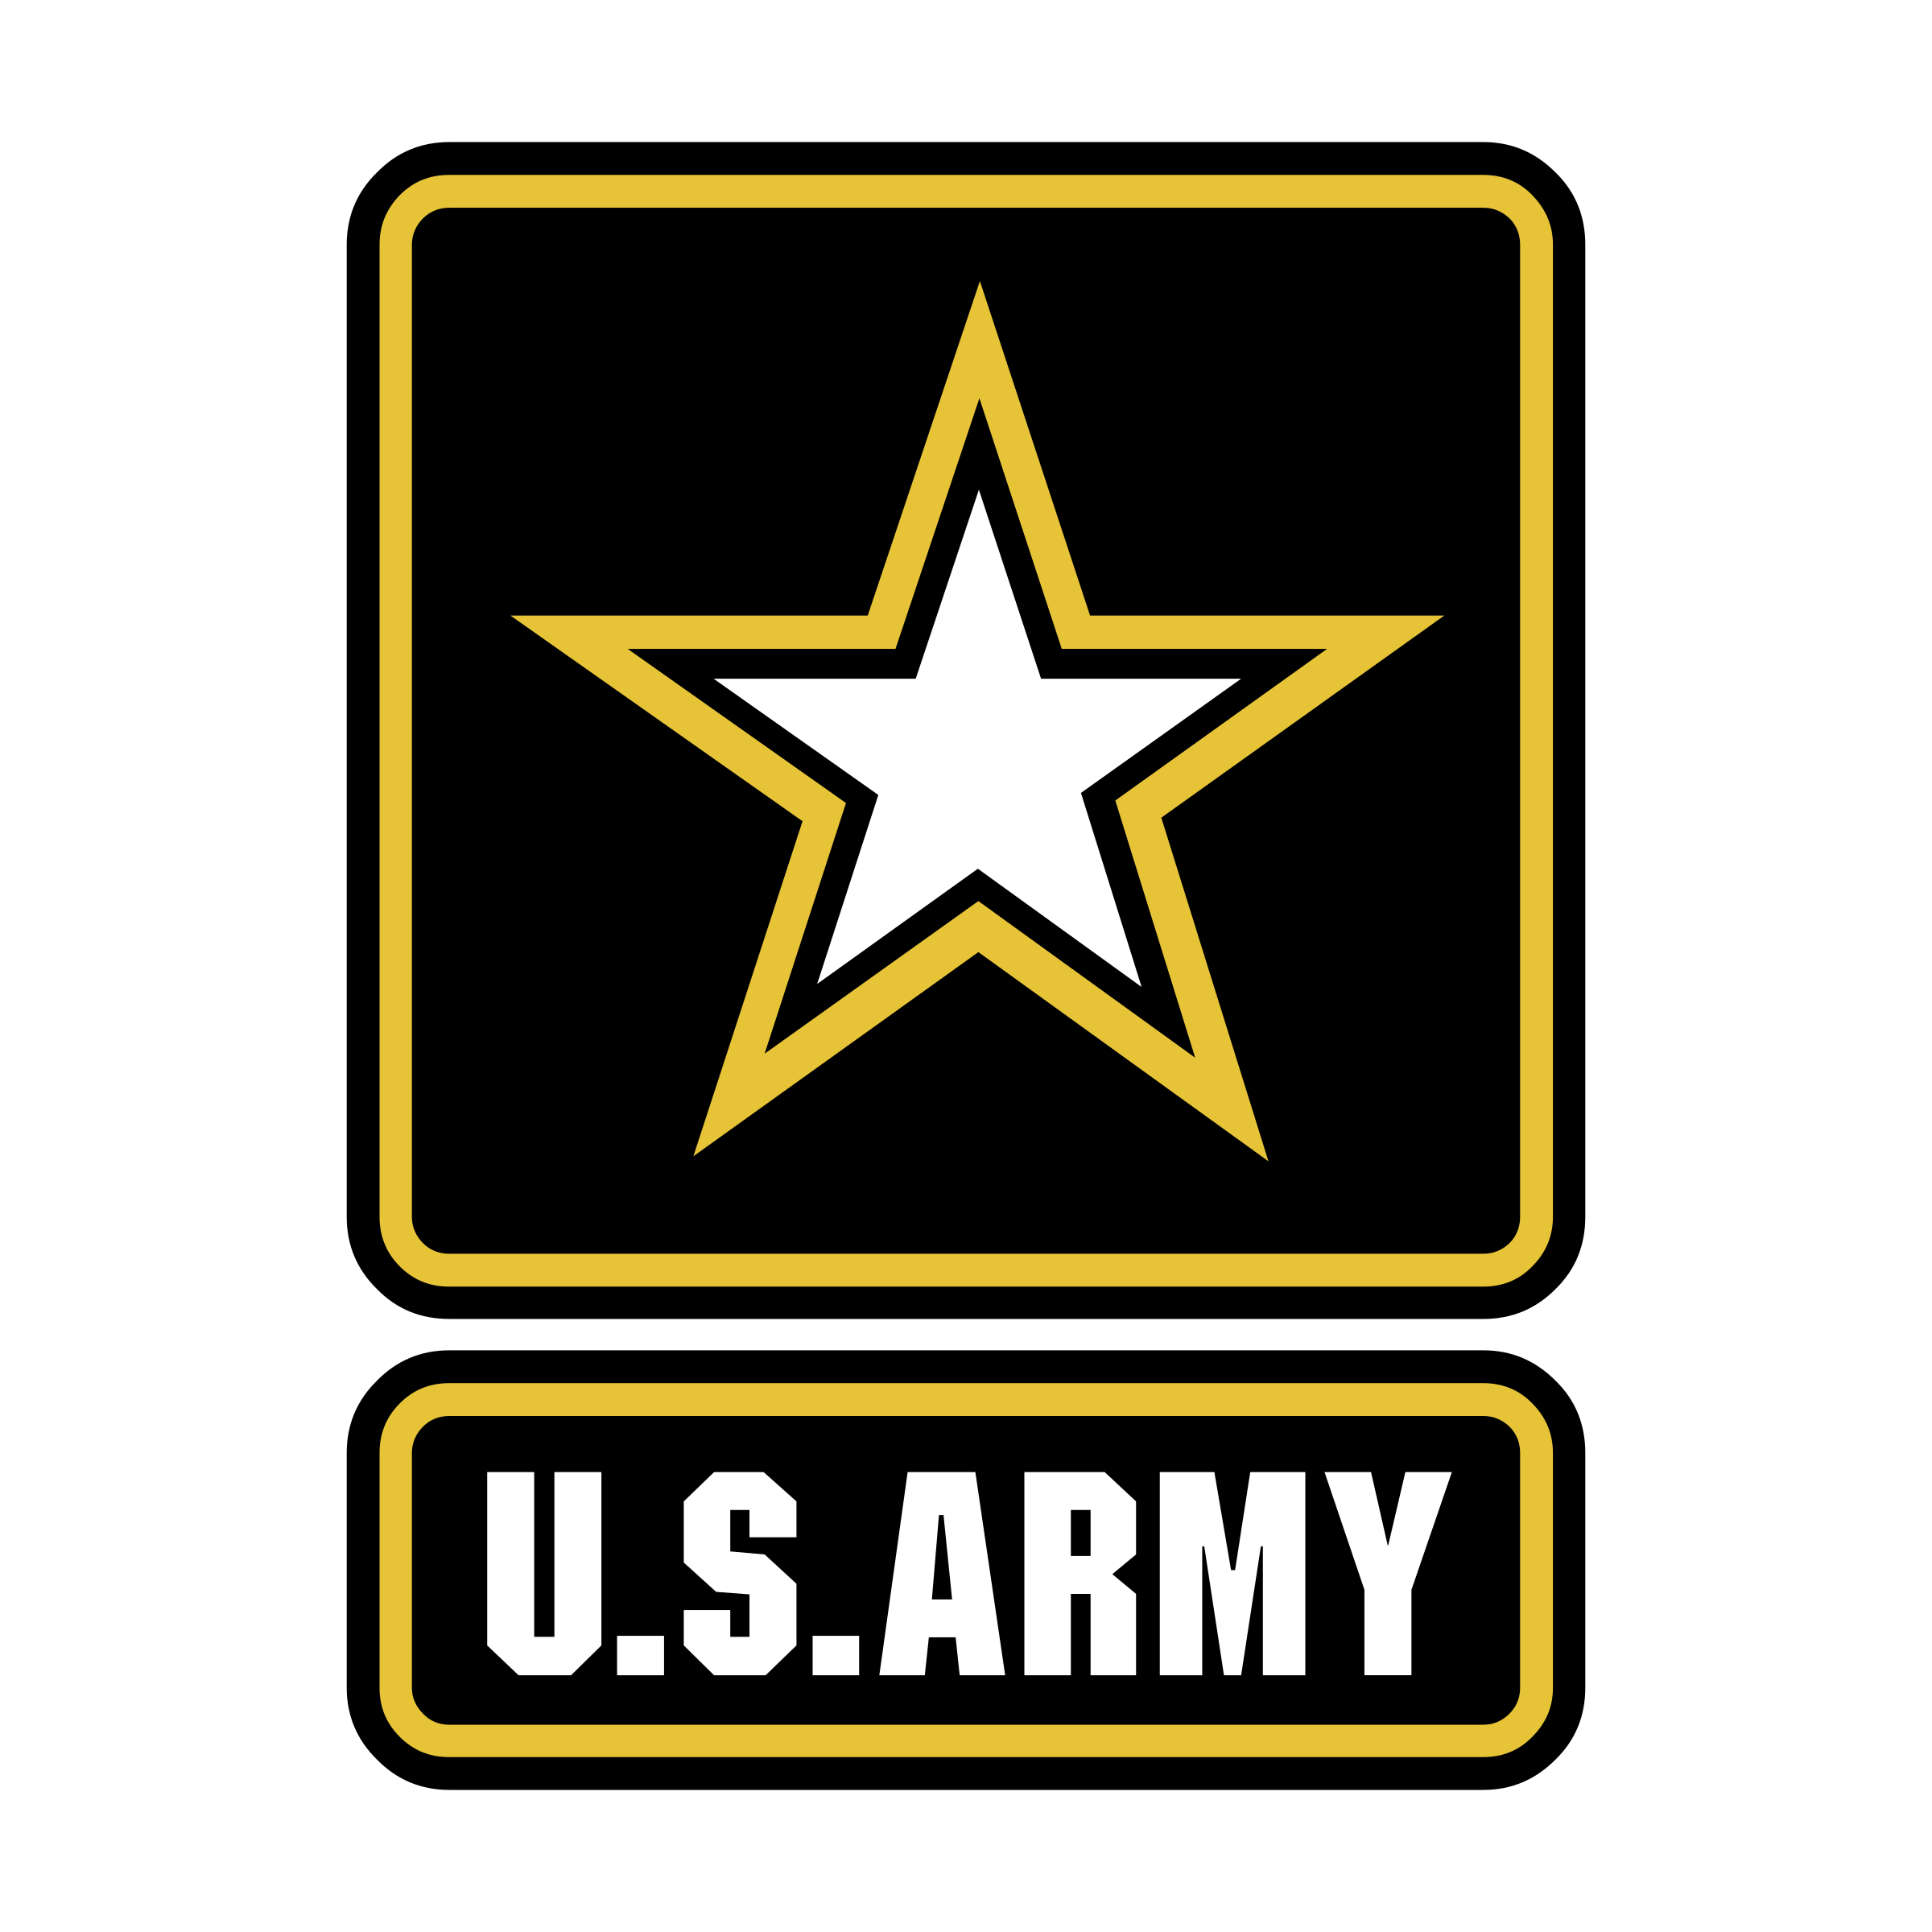 Foto do logotipo do exército de U.S